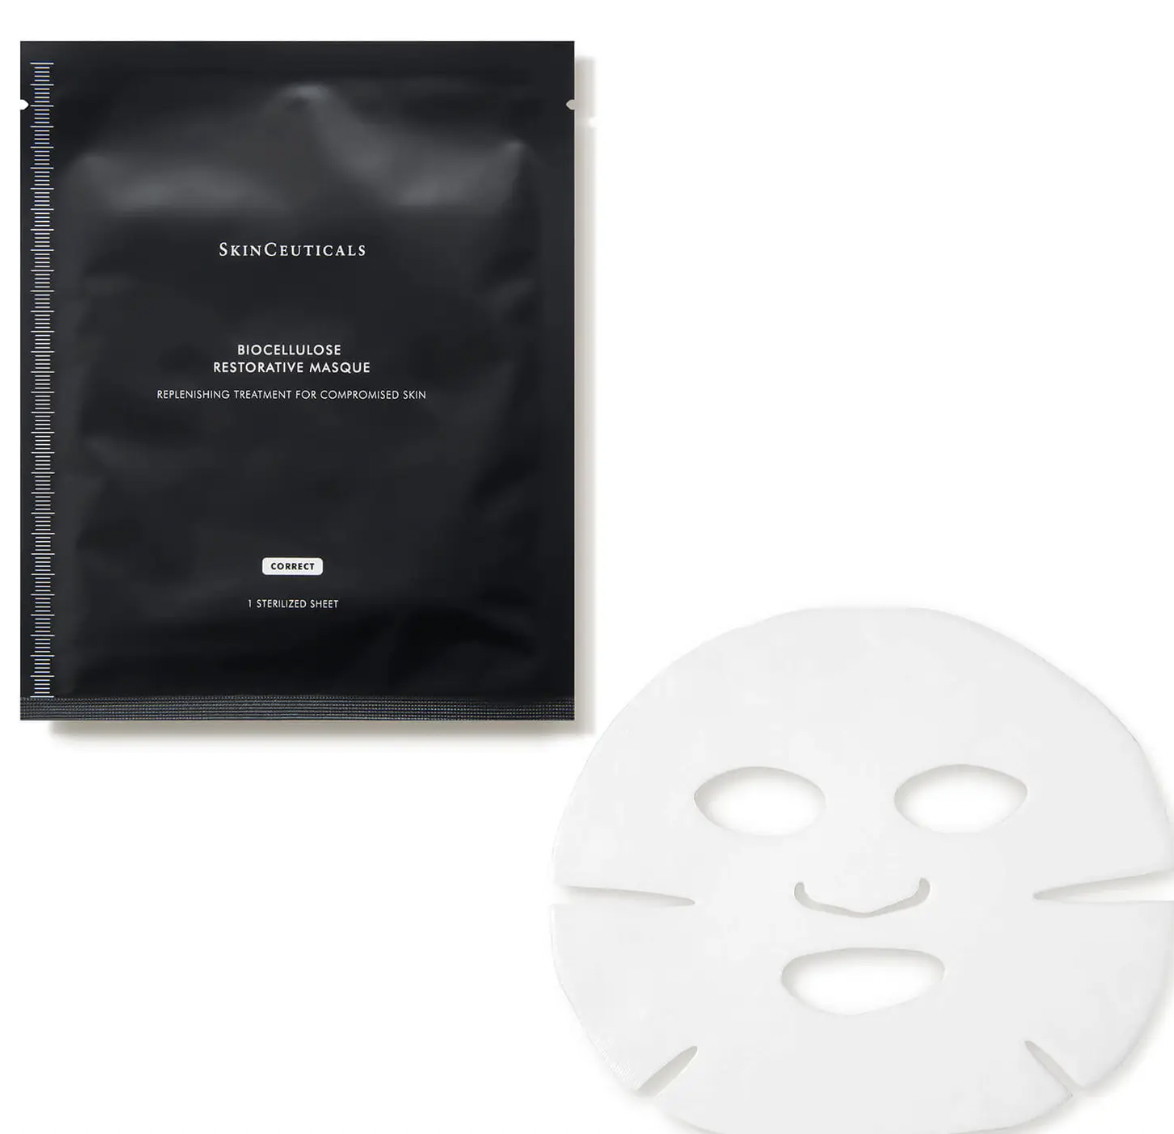 SkinCeuticals Biocellulose Restorative Mask (6 piece) $124